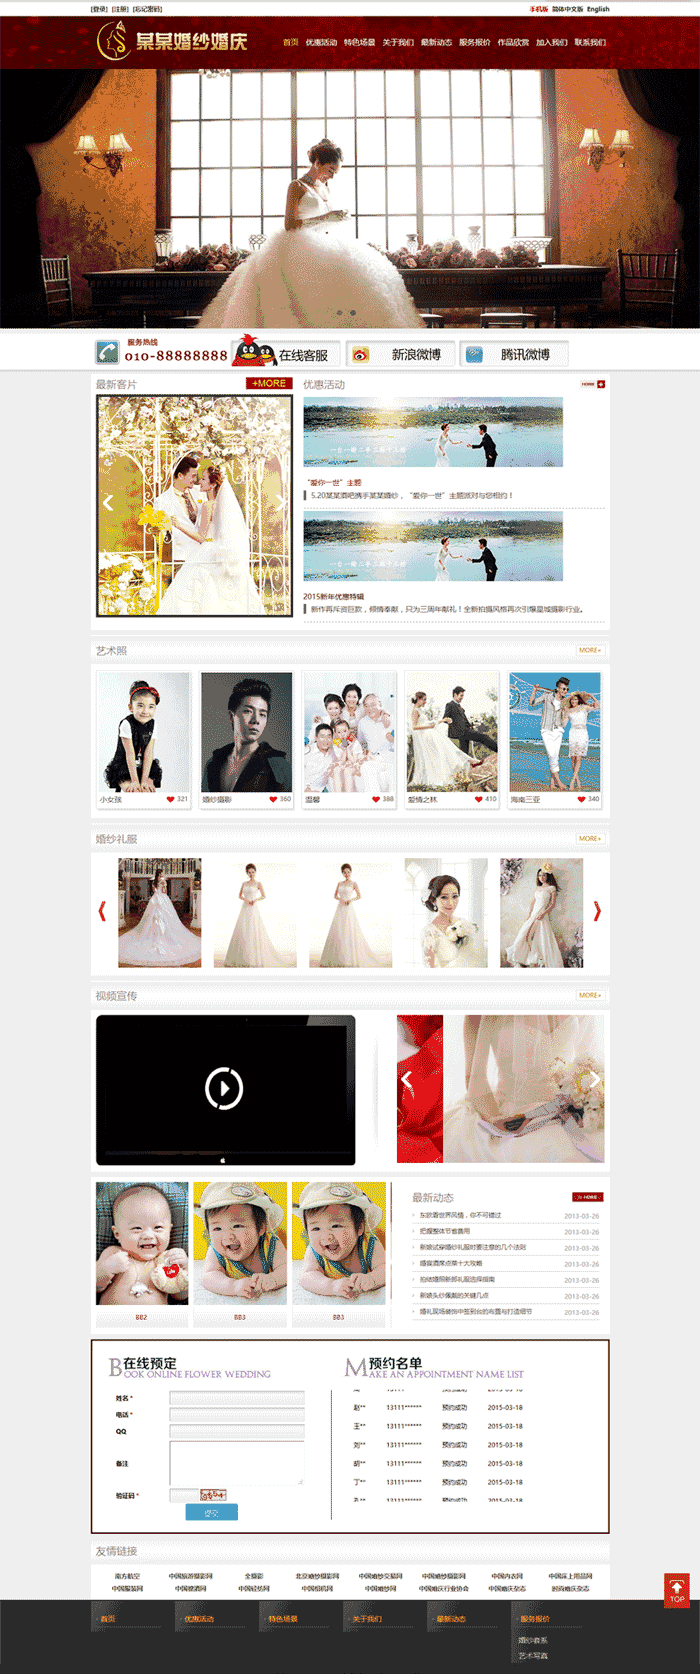 大气婚庆公司婚纱摄影网站WordPress模板主题演示图